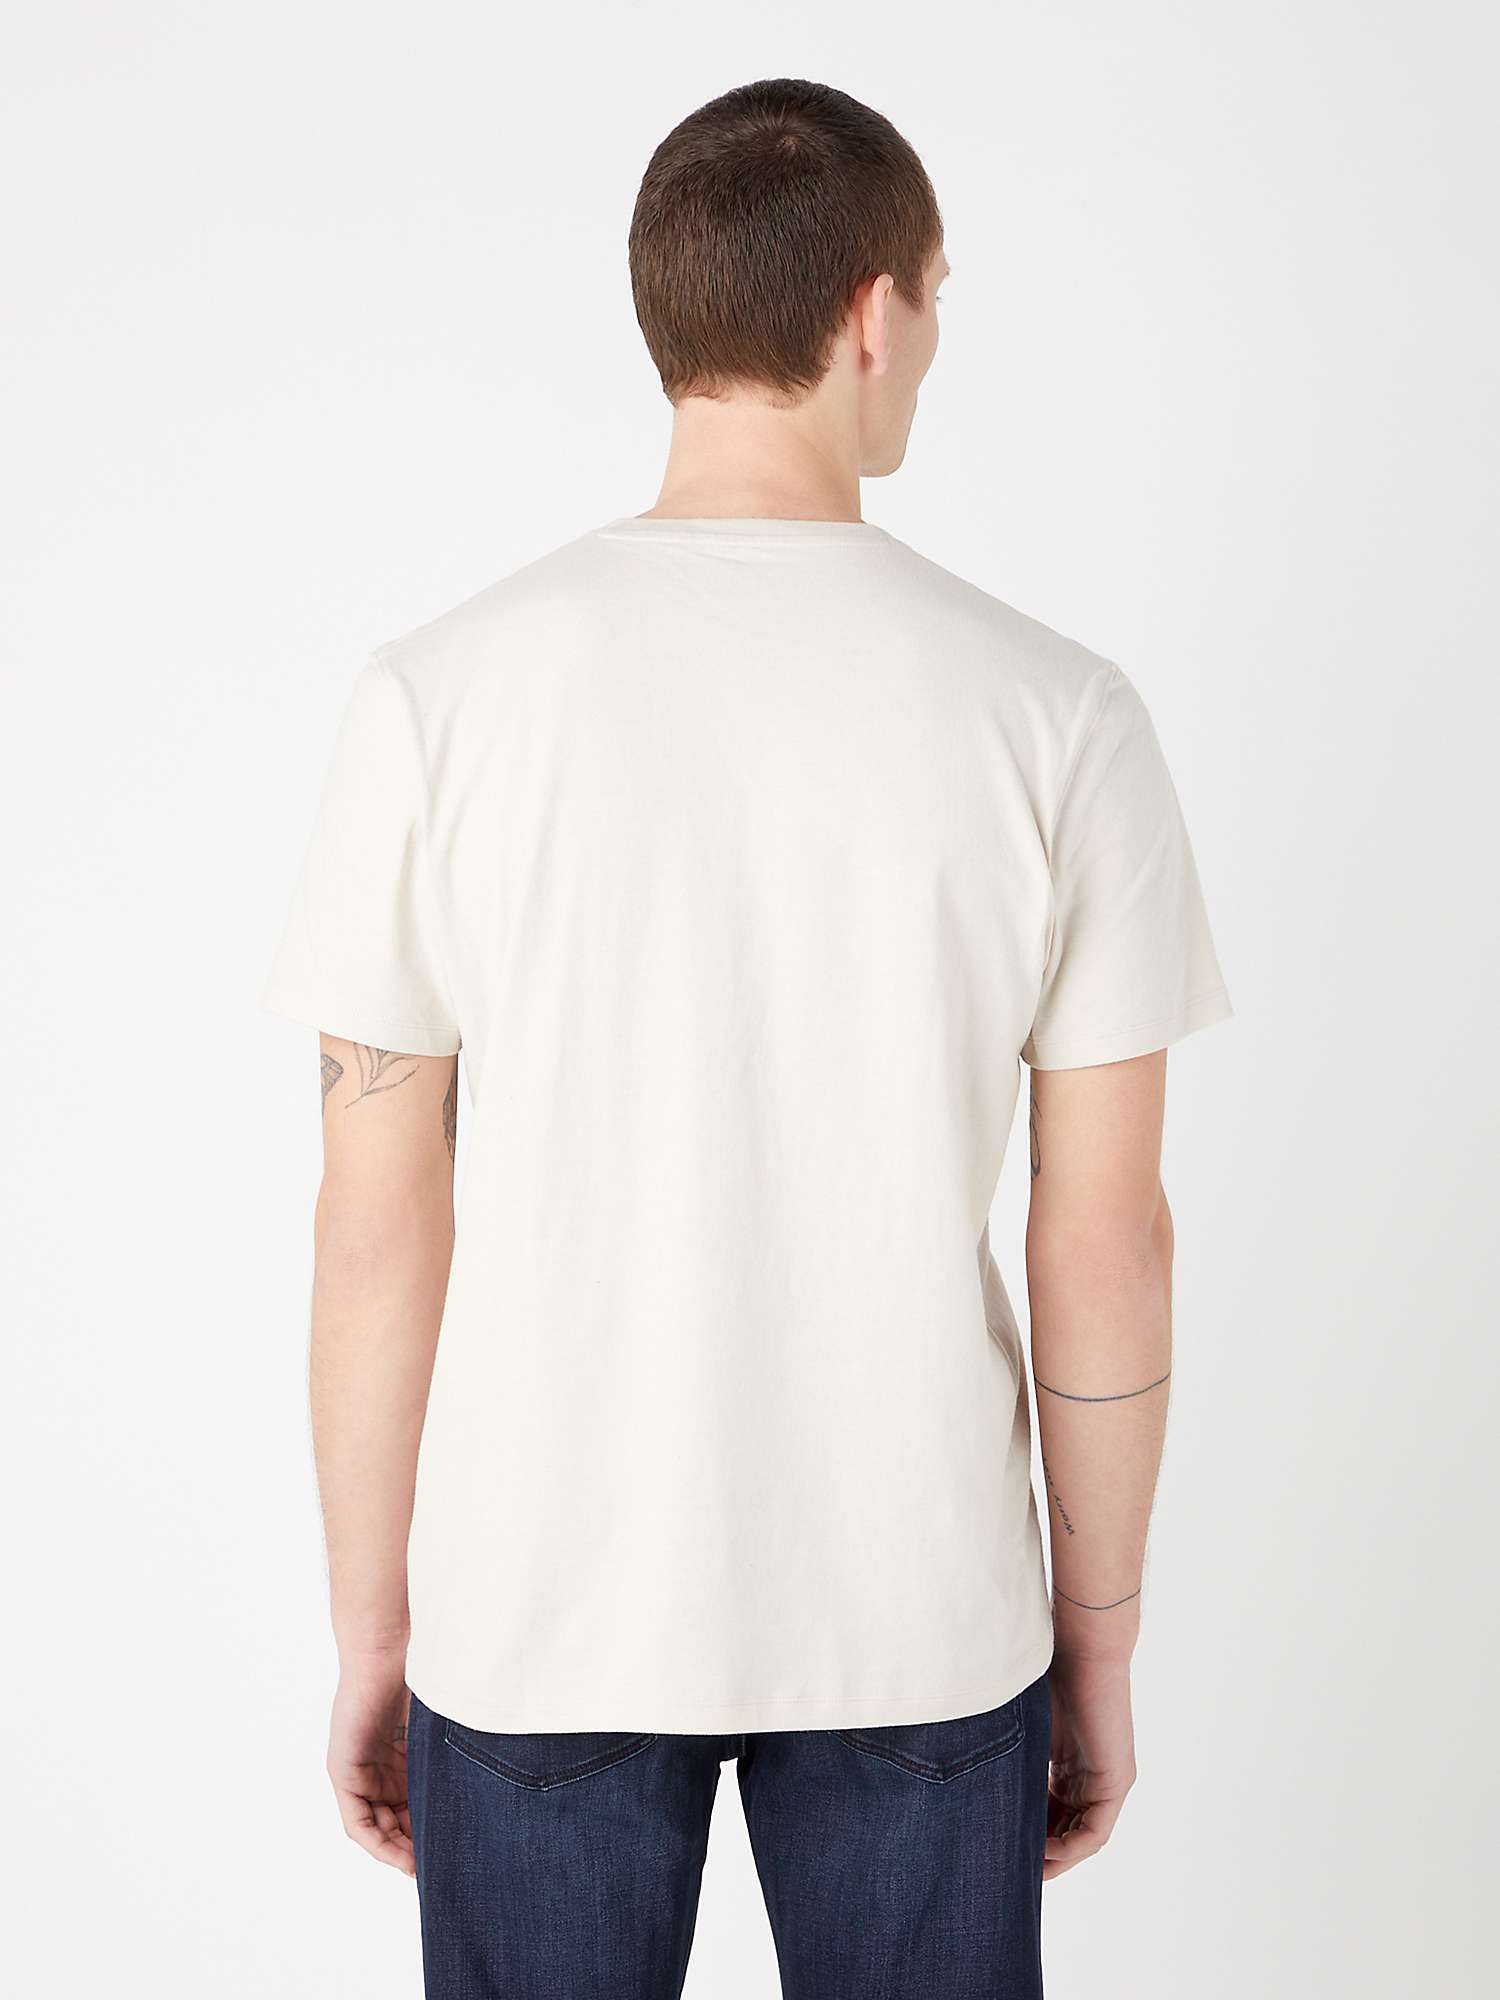 Buy Wrangler Short Sleeve Logo T-Shirt, Rainy Day Online at johnlewis.com